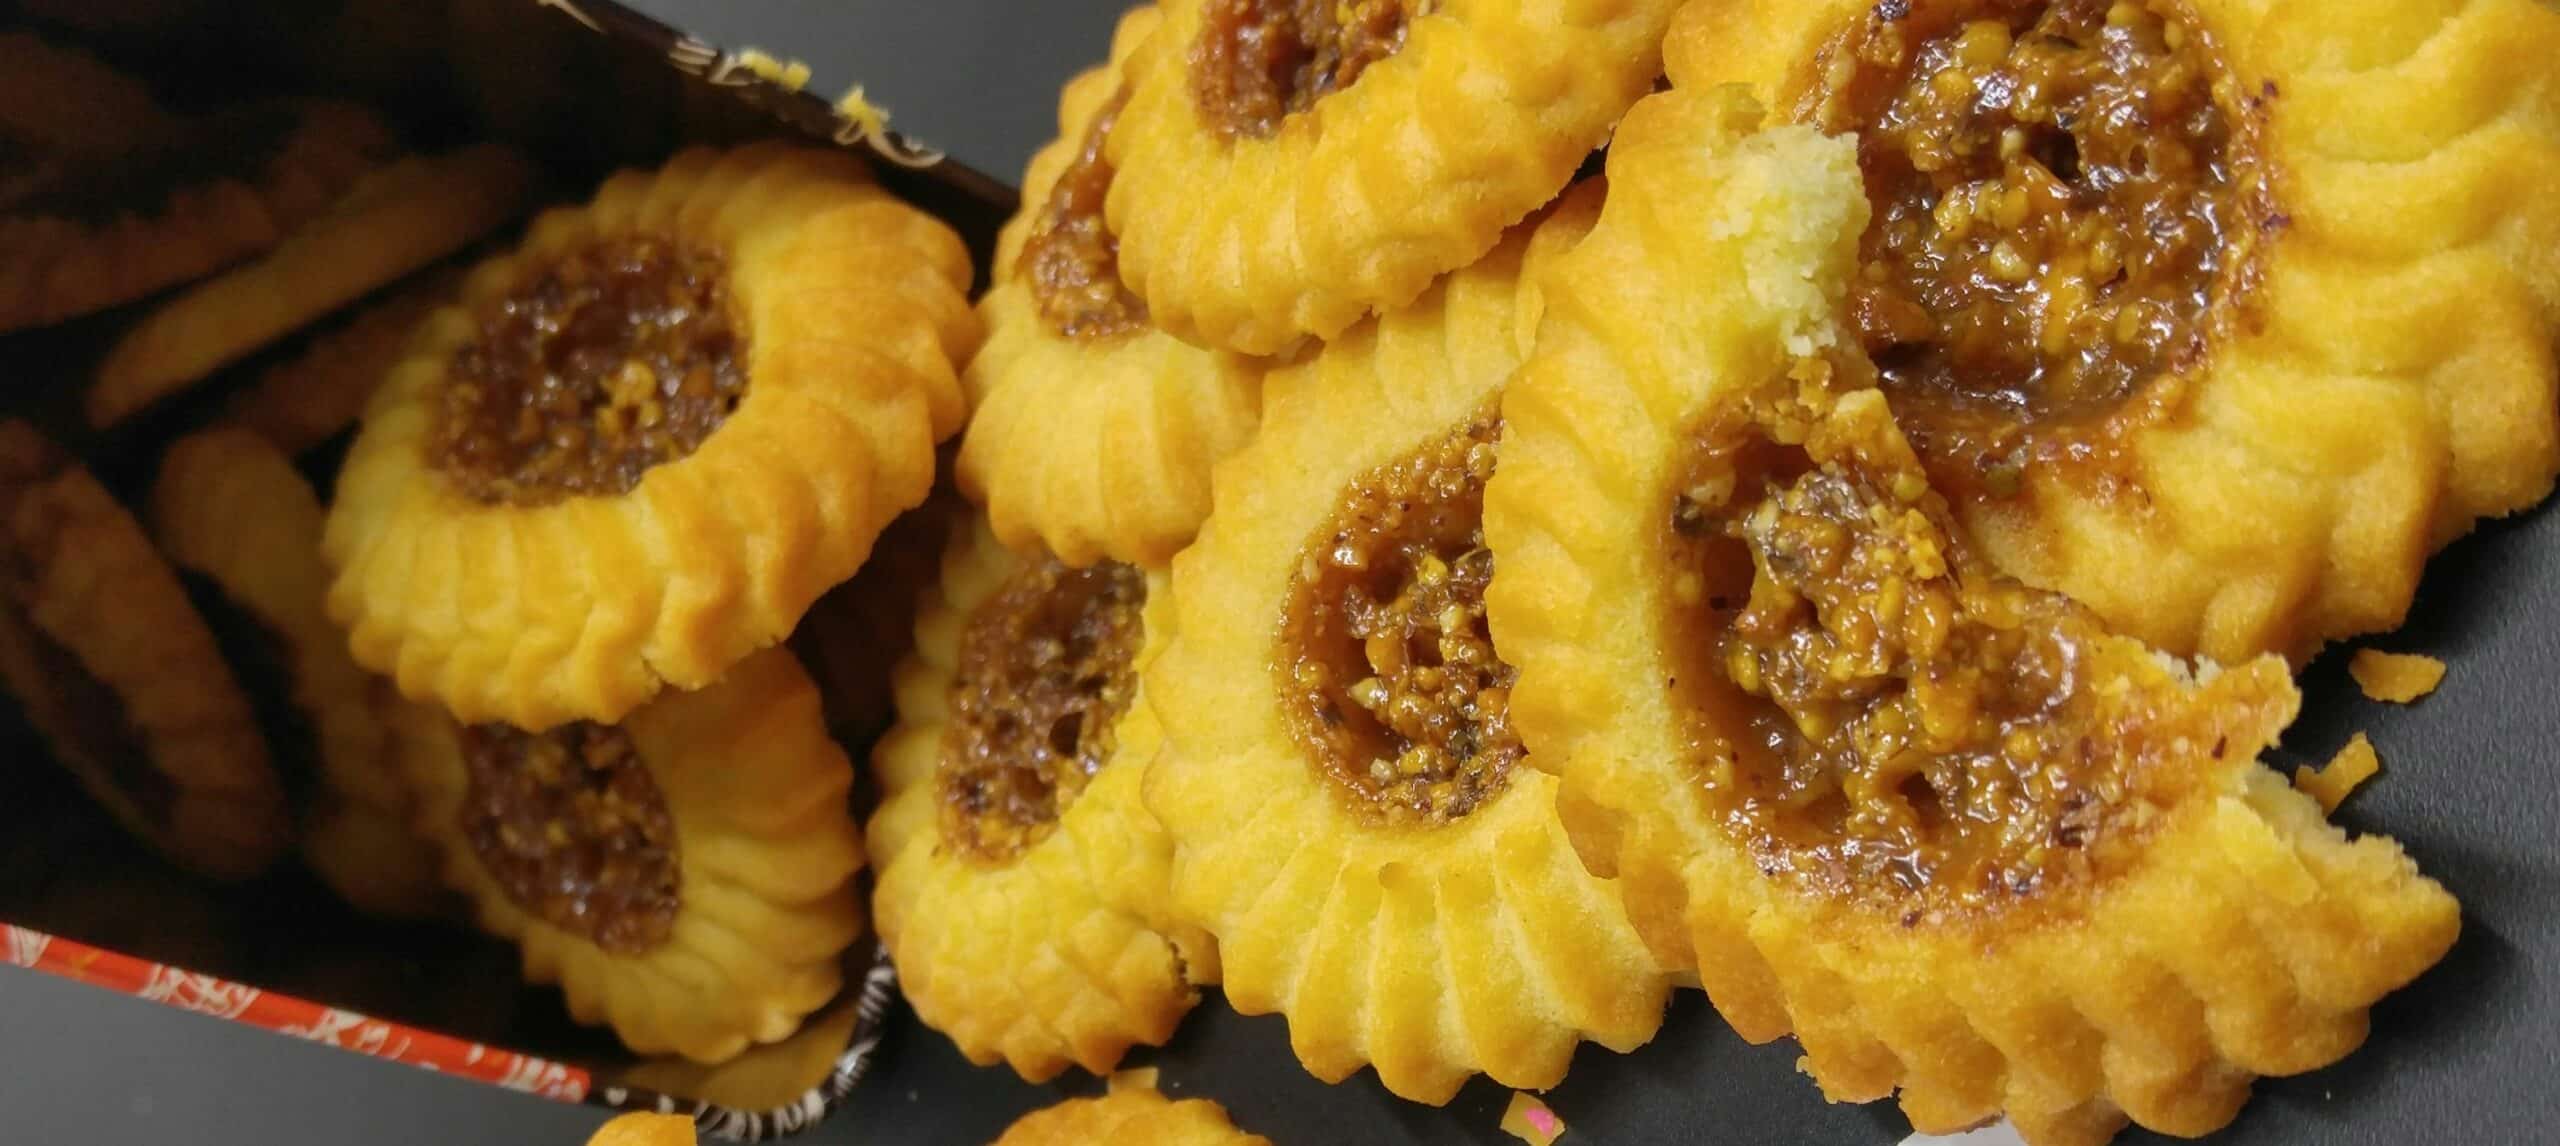 עוגיות פלורנטין - מתכון של שף פטיסרי הודיה קליף ושף פטיסרי גל בוכניק